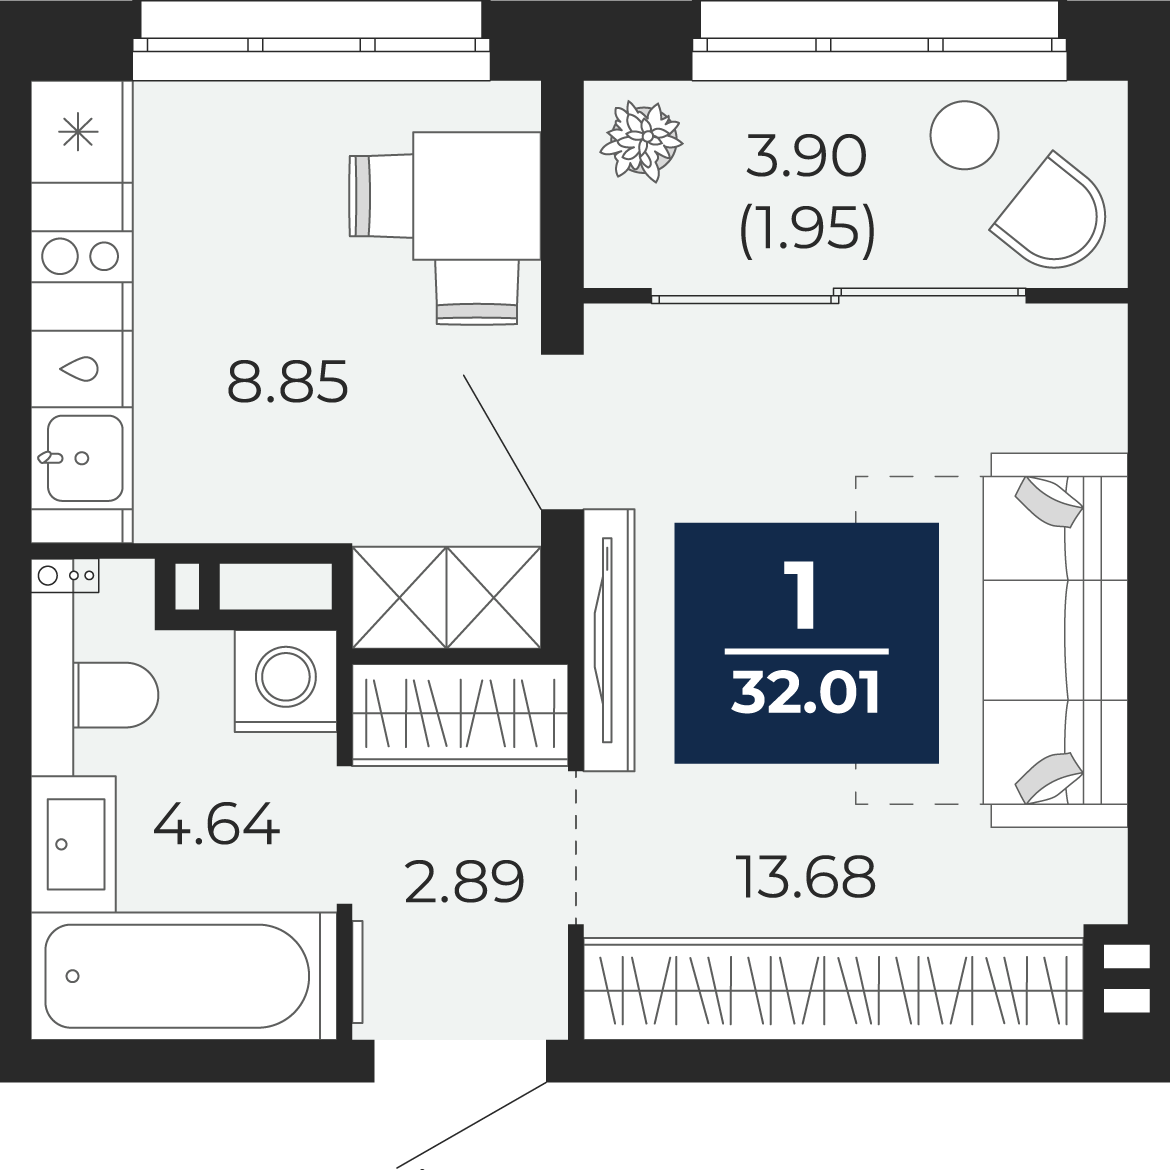 Квартира № 284, 1-комнатная, 32.01 кв. м, 10 этаж